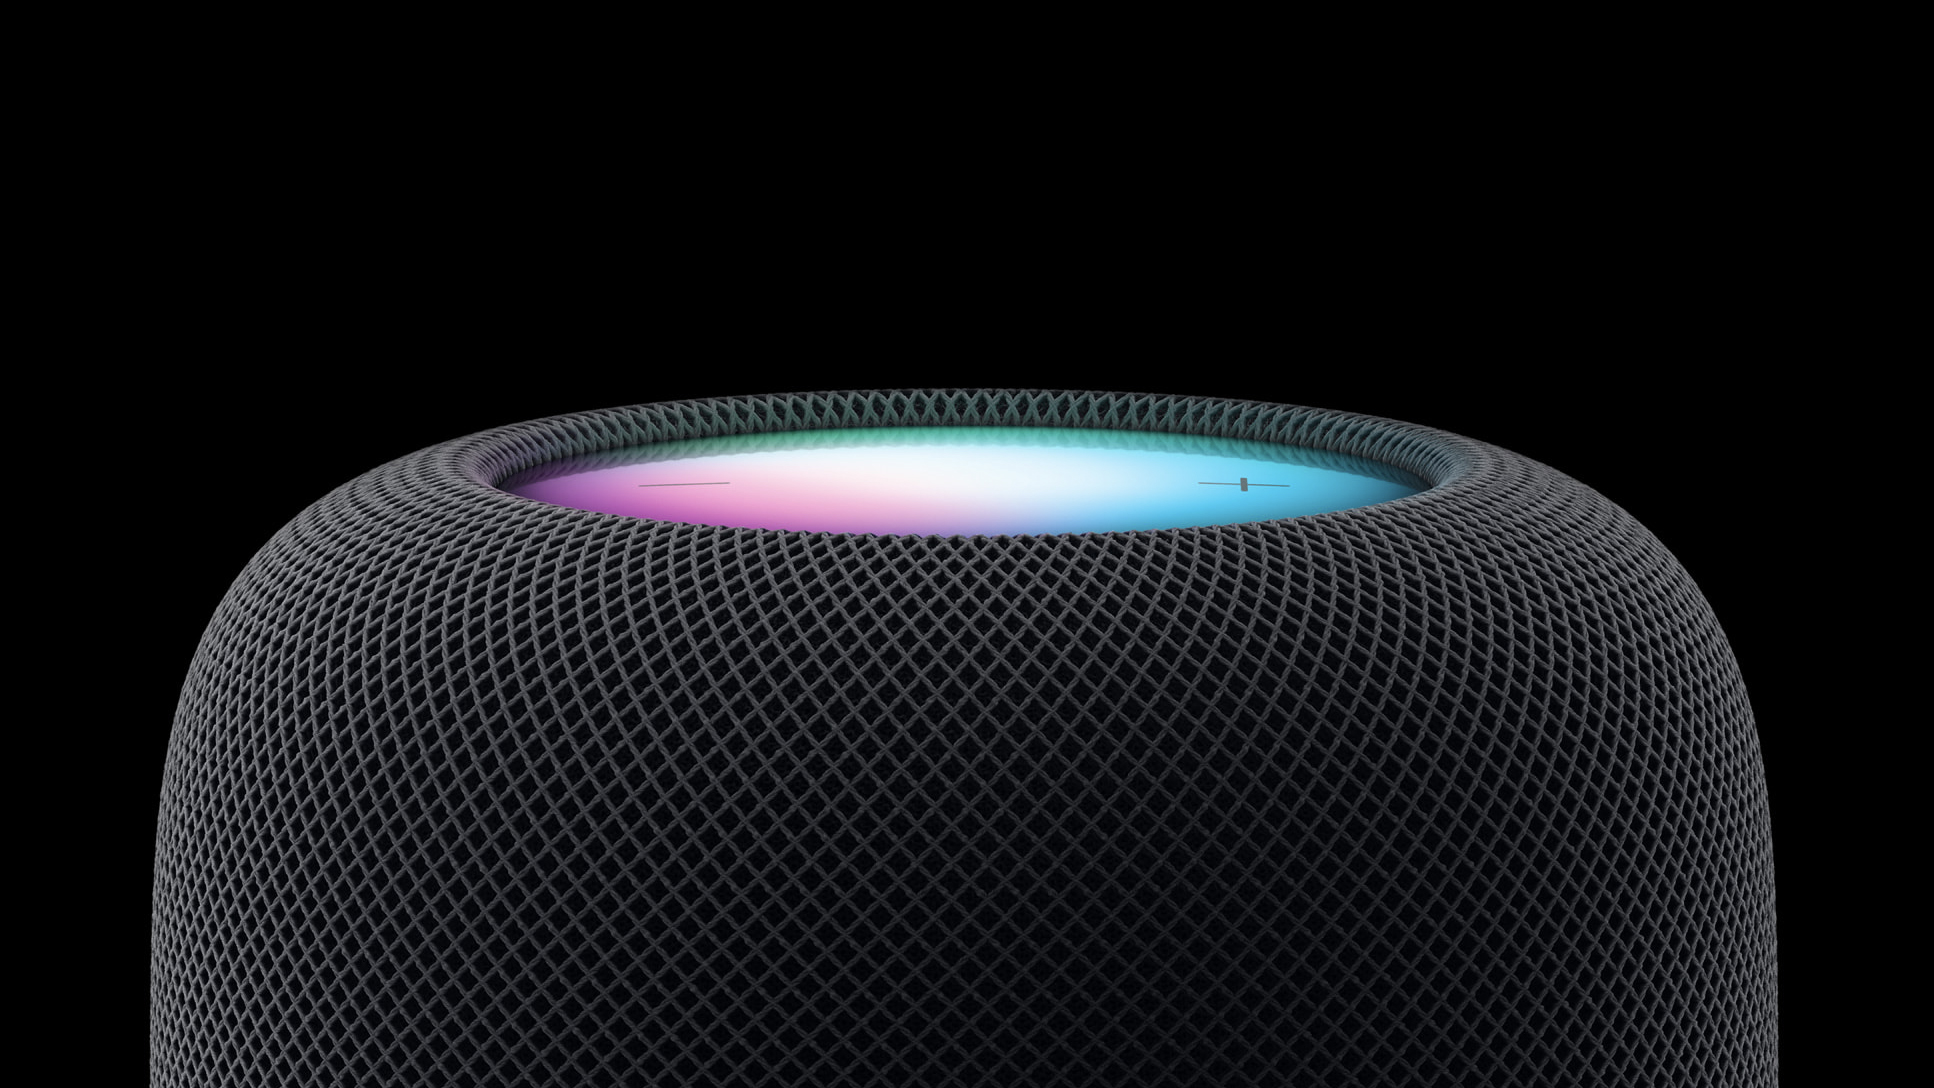 Предполагается, что следующий HomePod от Apple станет продолжением шоу Amazon Echo Show.